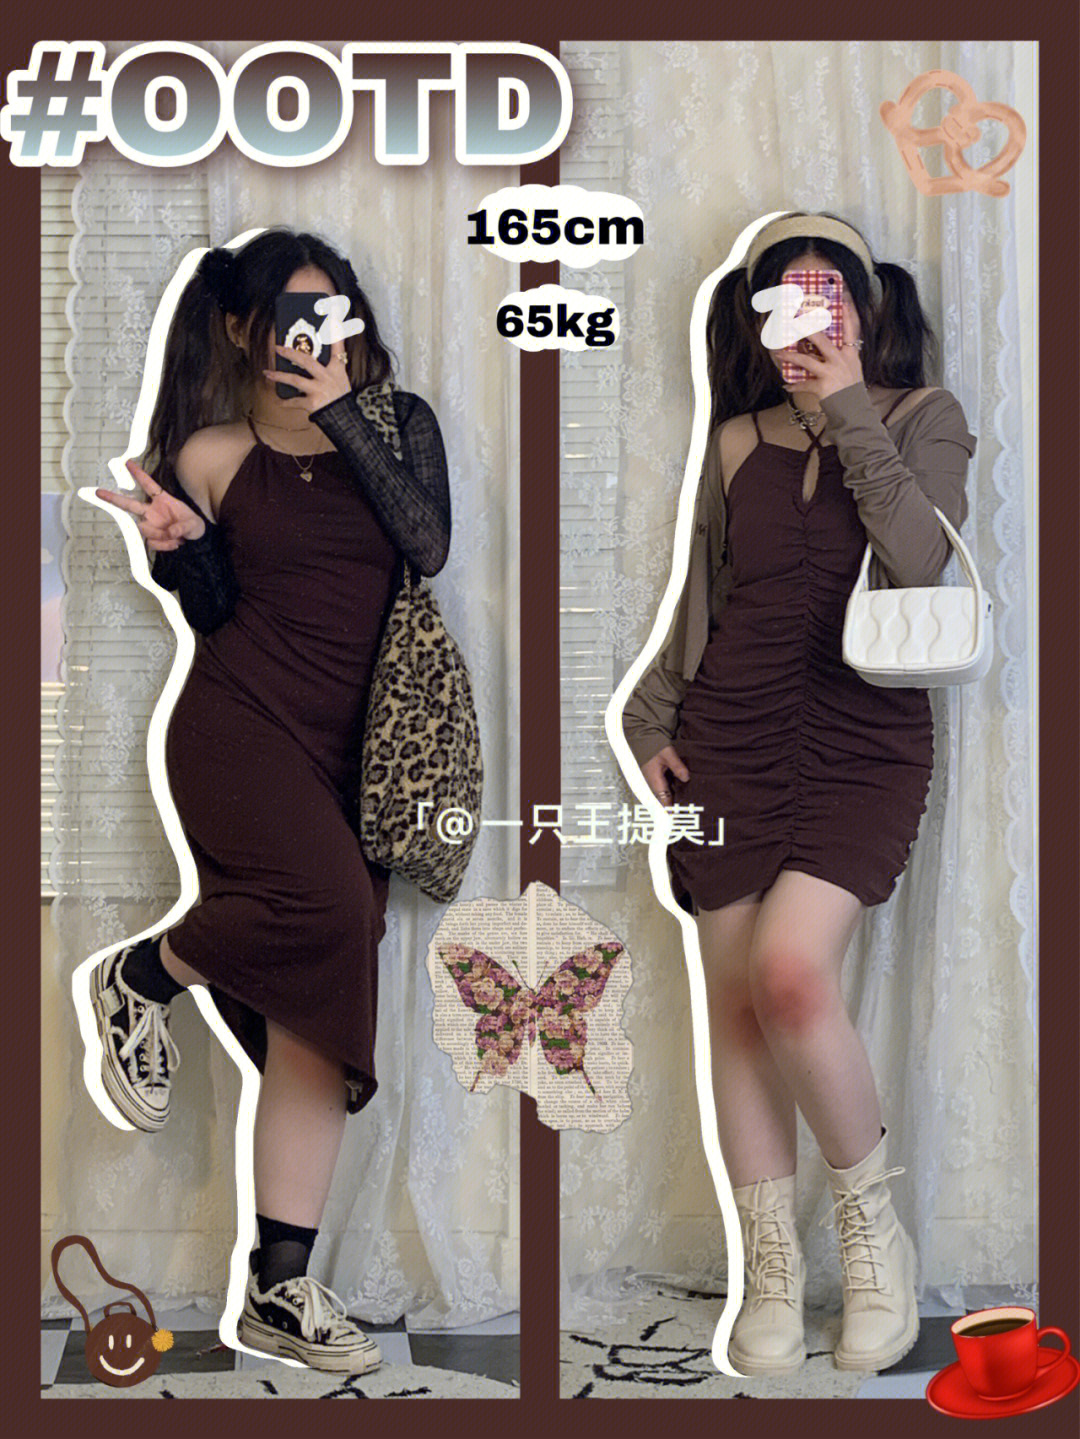 130斤165cm女孩三围图片